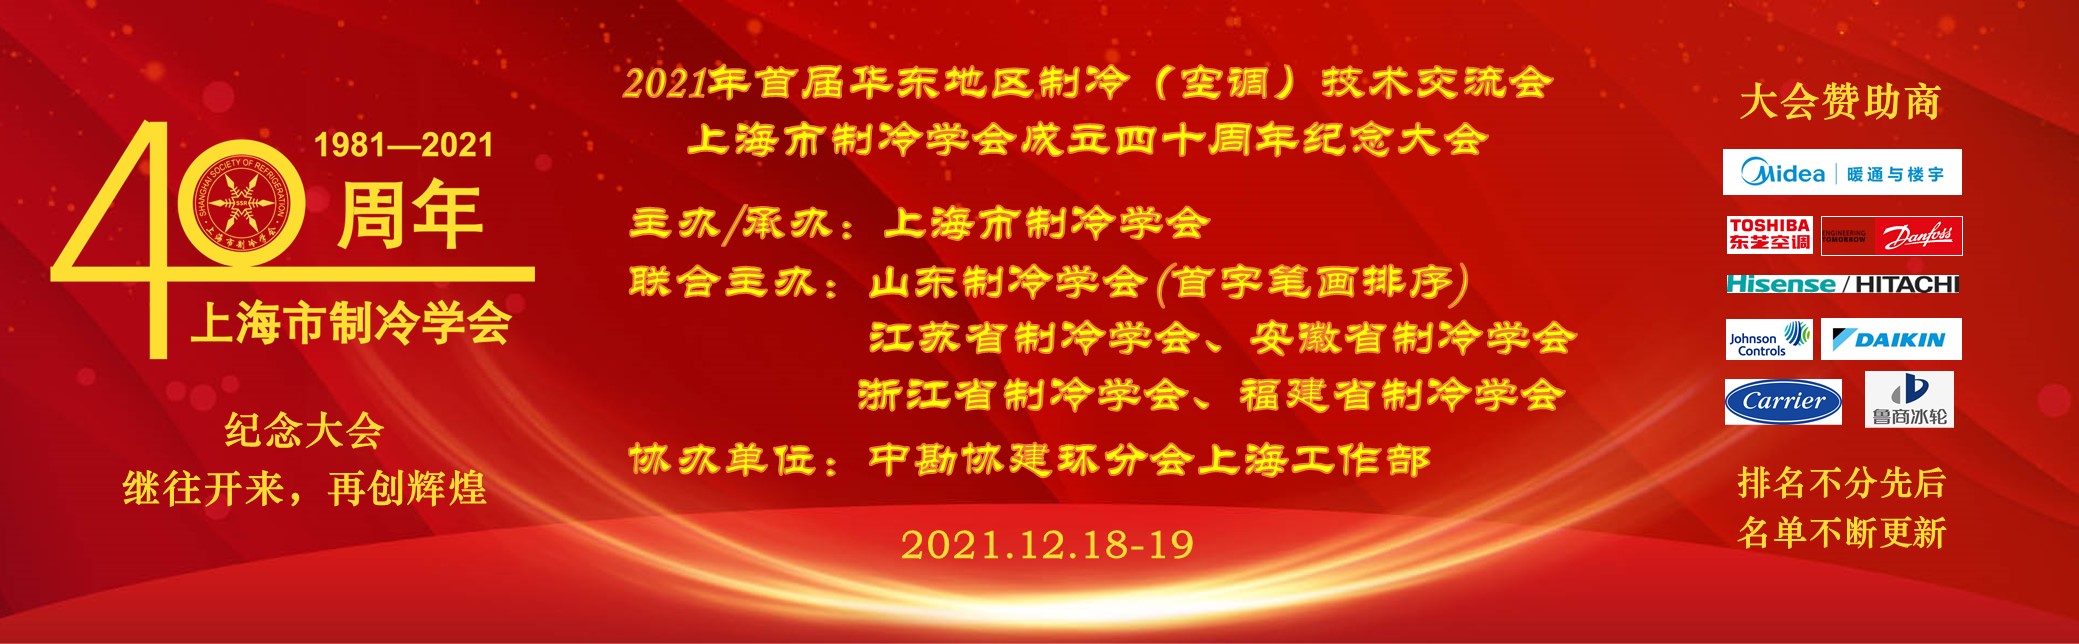 2021“首届华东地区制冷（空调）技术交流会暨上海市制冷学会成立四十周年纪念大会”